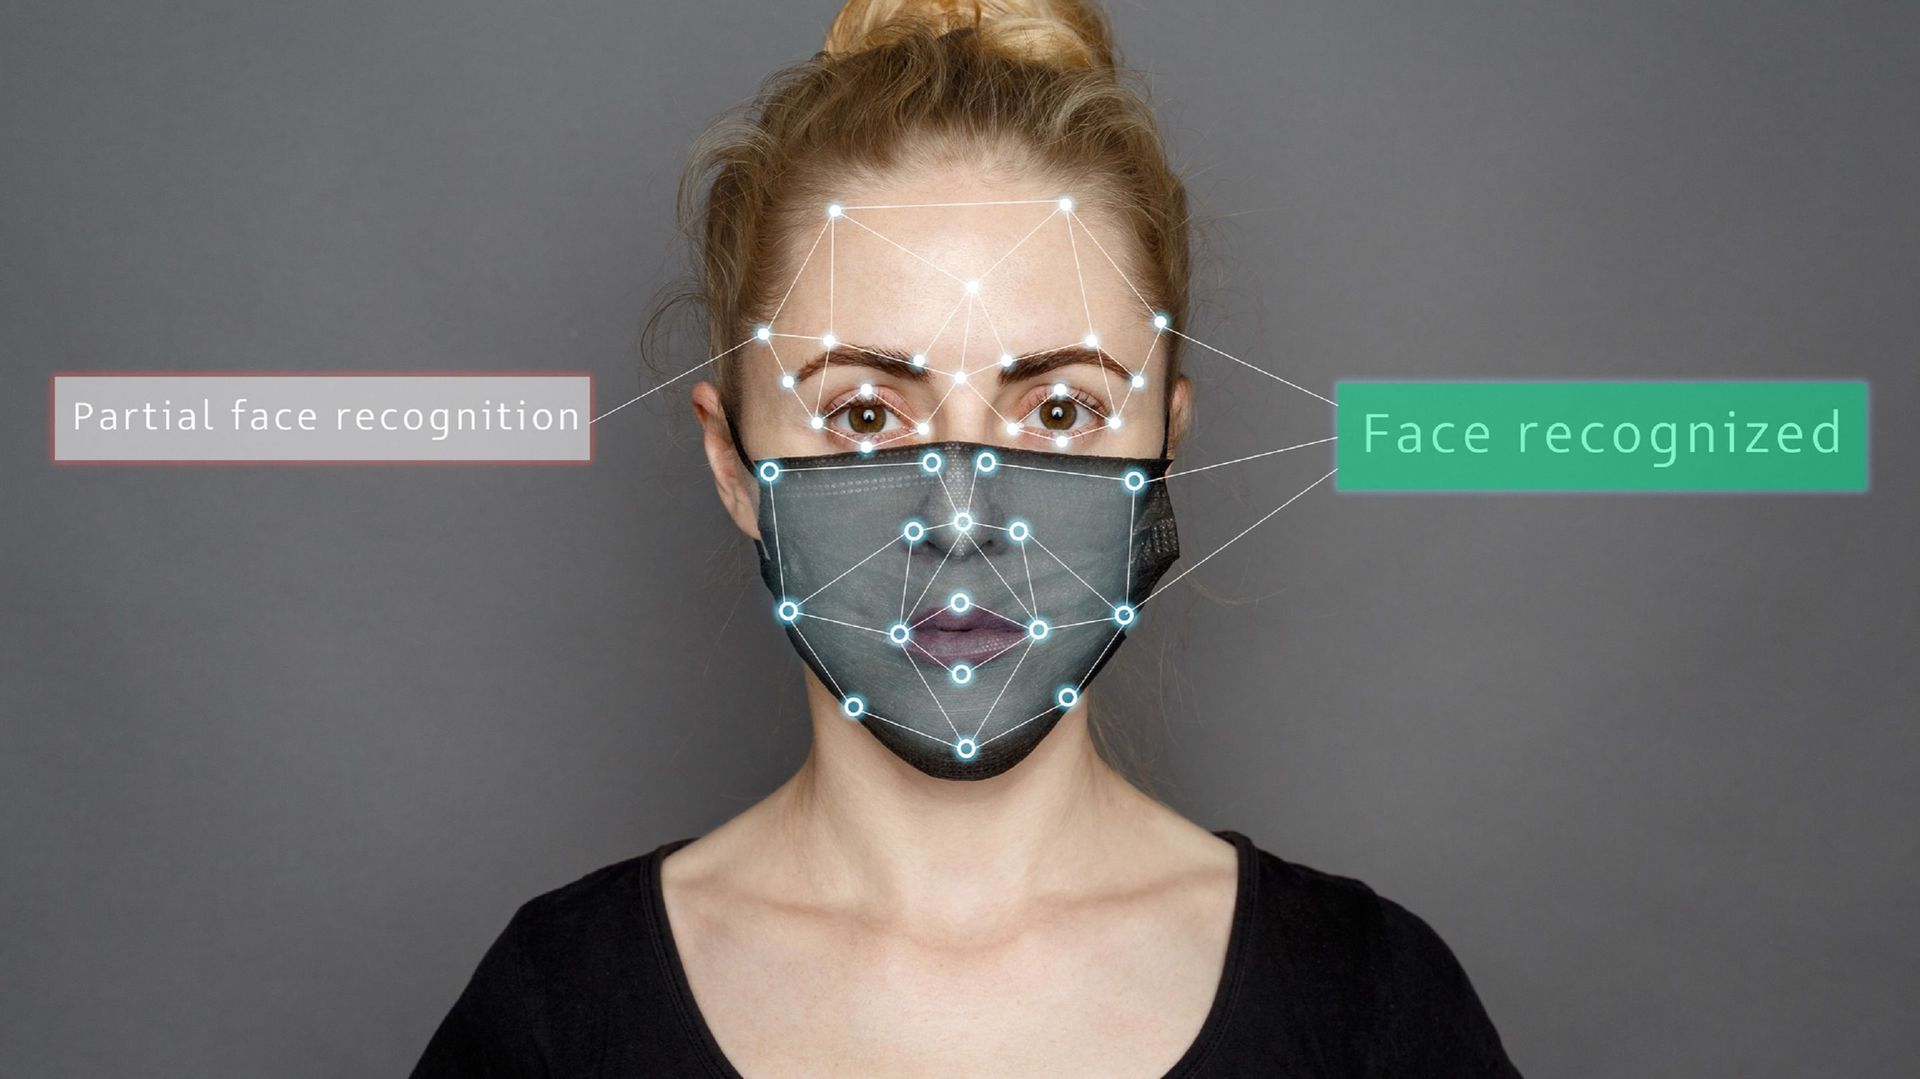 Le masque n'est plus vraiment un obstacle à la reconnaissance faciale aujourd'hui.